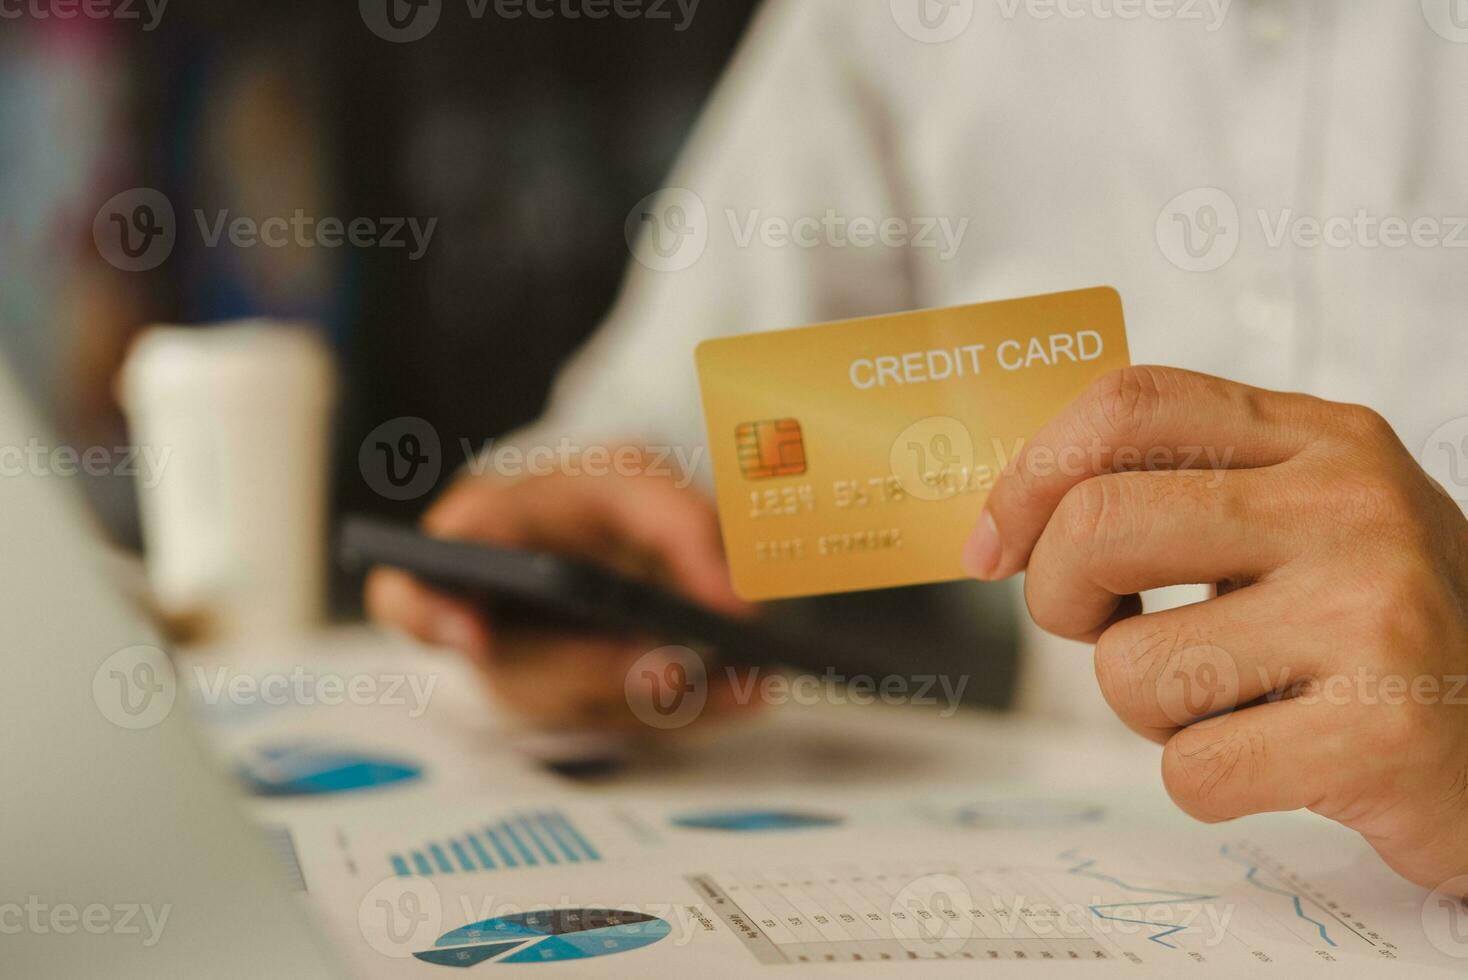 moderno digital en línea pago pago comercio electrónico y negocio análisis financiero tecnología. hombre utilizando crédito tarjeta y teléfono a analizar negocio grafico foto